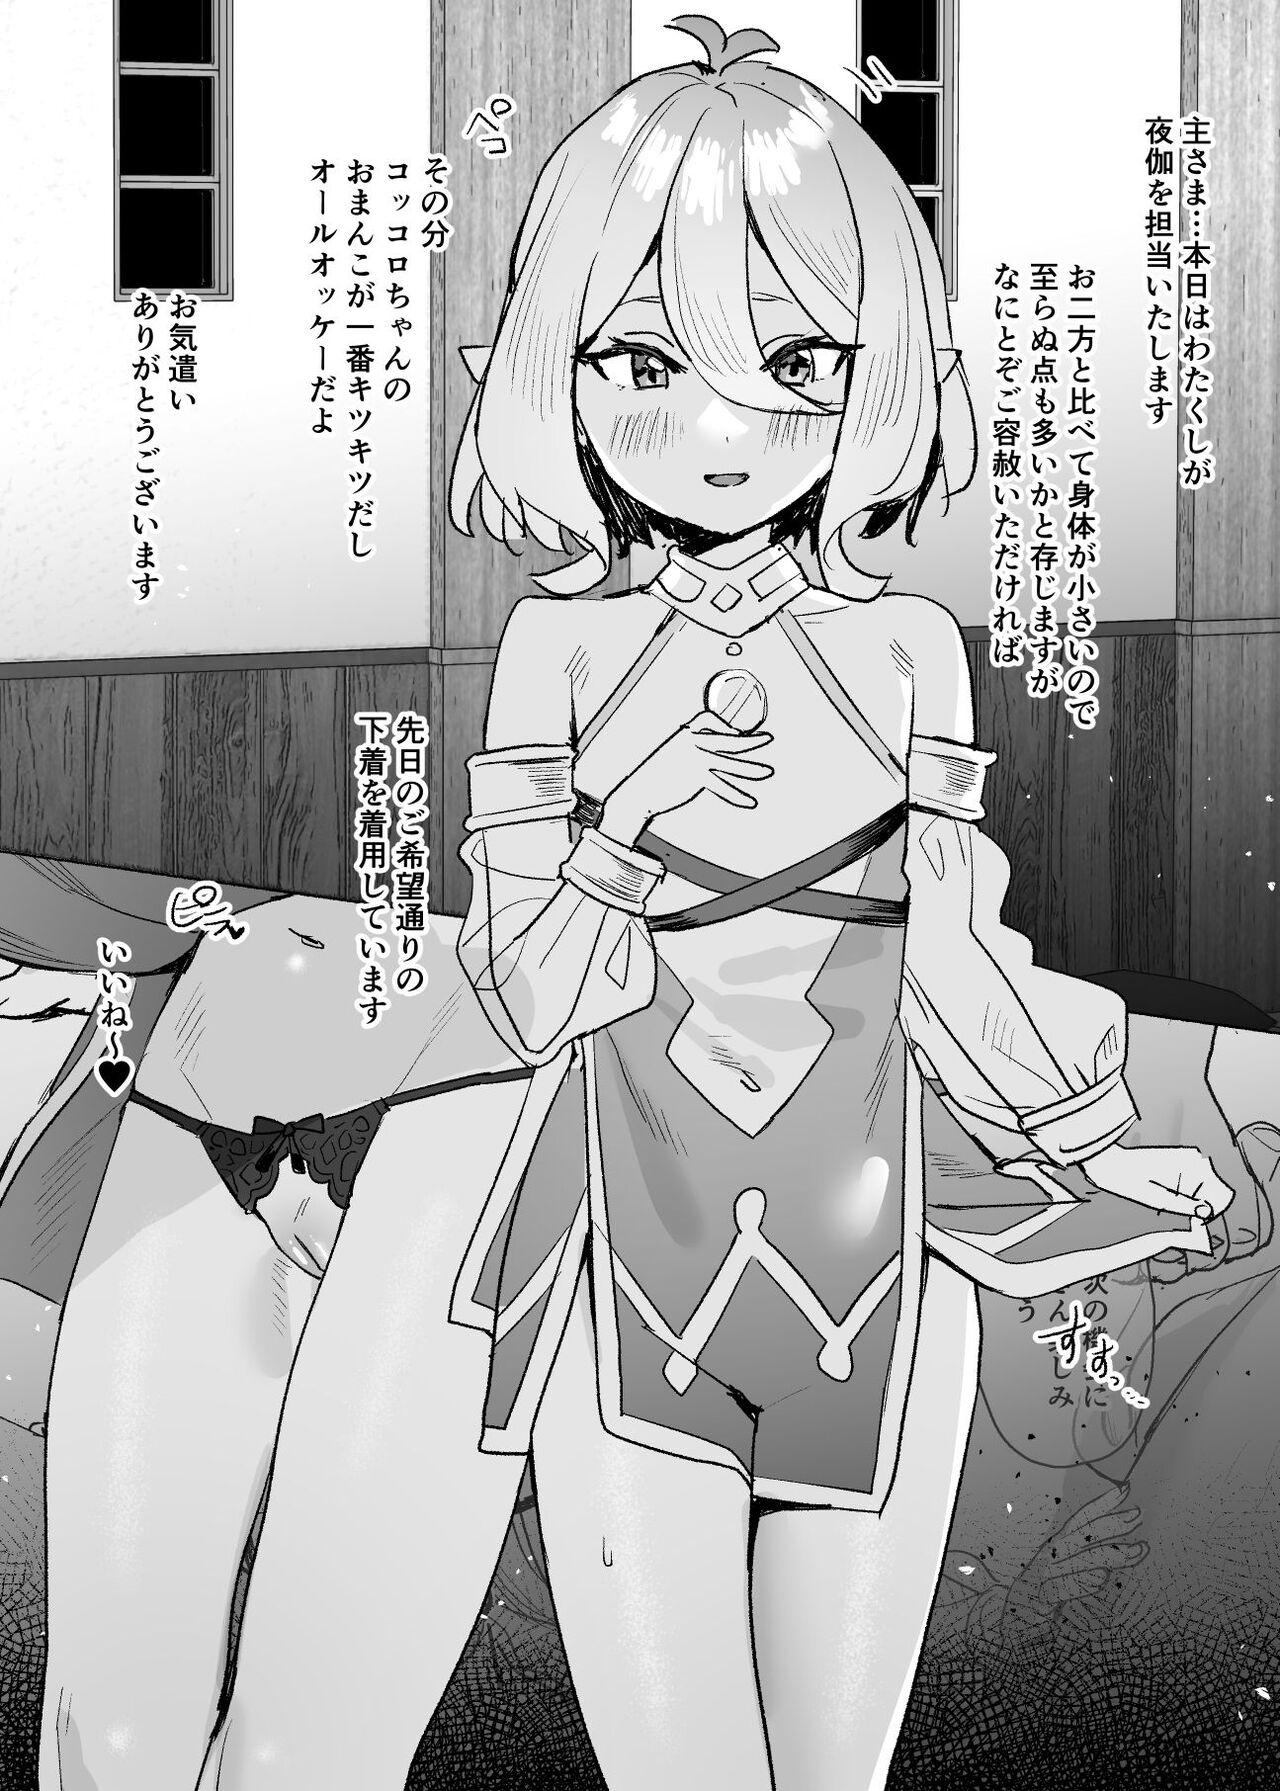 Bigbutt Kokkoro-chan Manga - Princess connect Abuse - Page 1